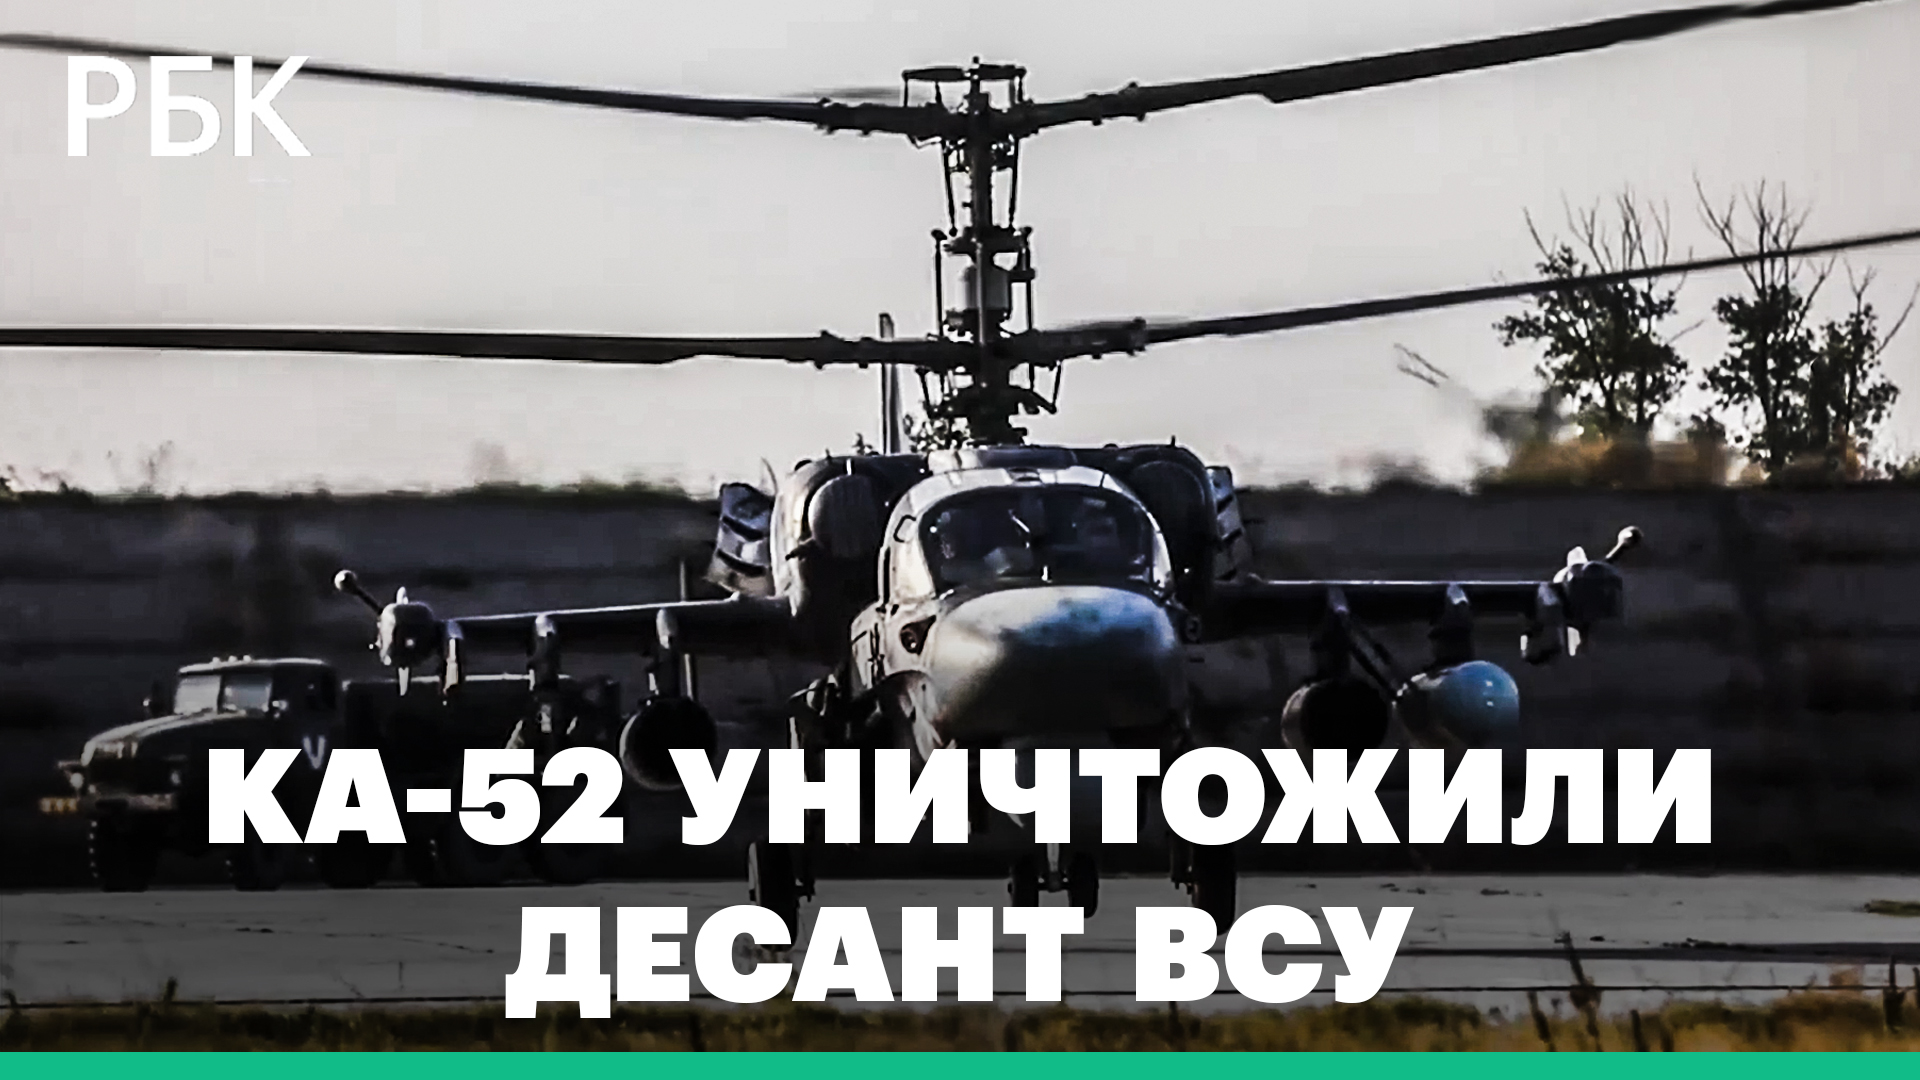 Вертолеты Ка–52 уничтожили баржу с десантом ВСУ на Днепре: видео Минобороны России